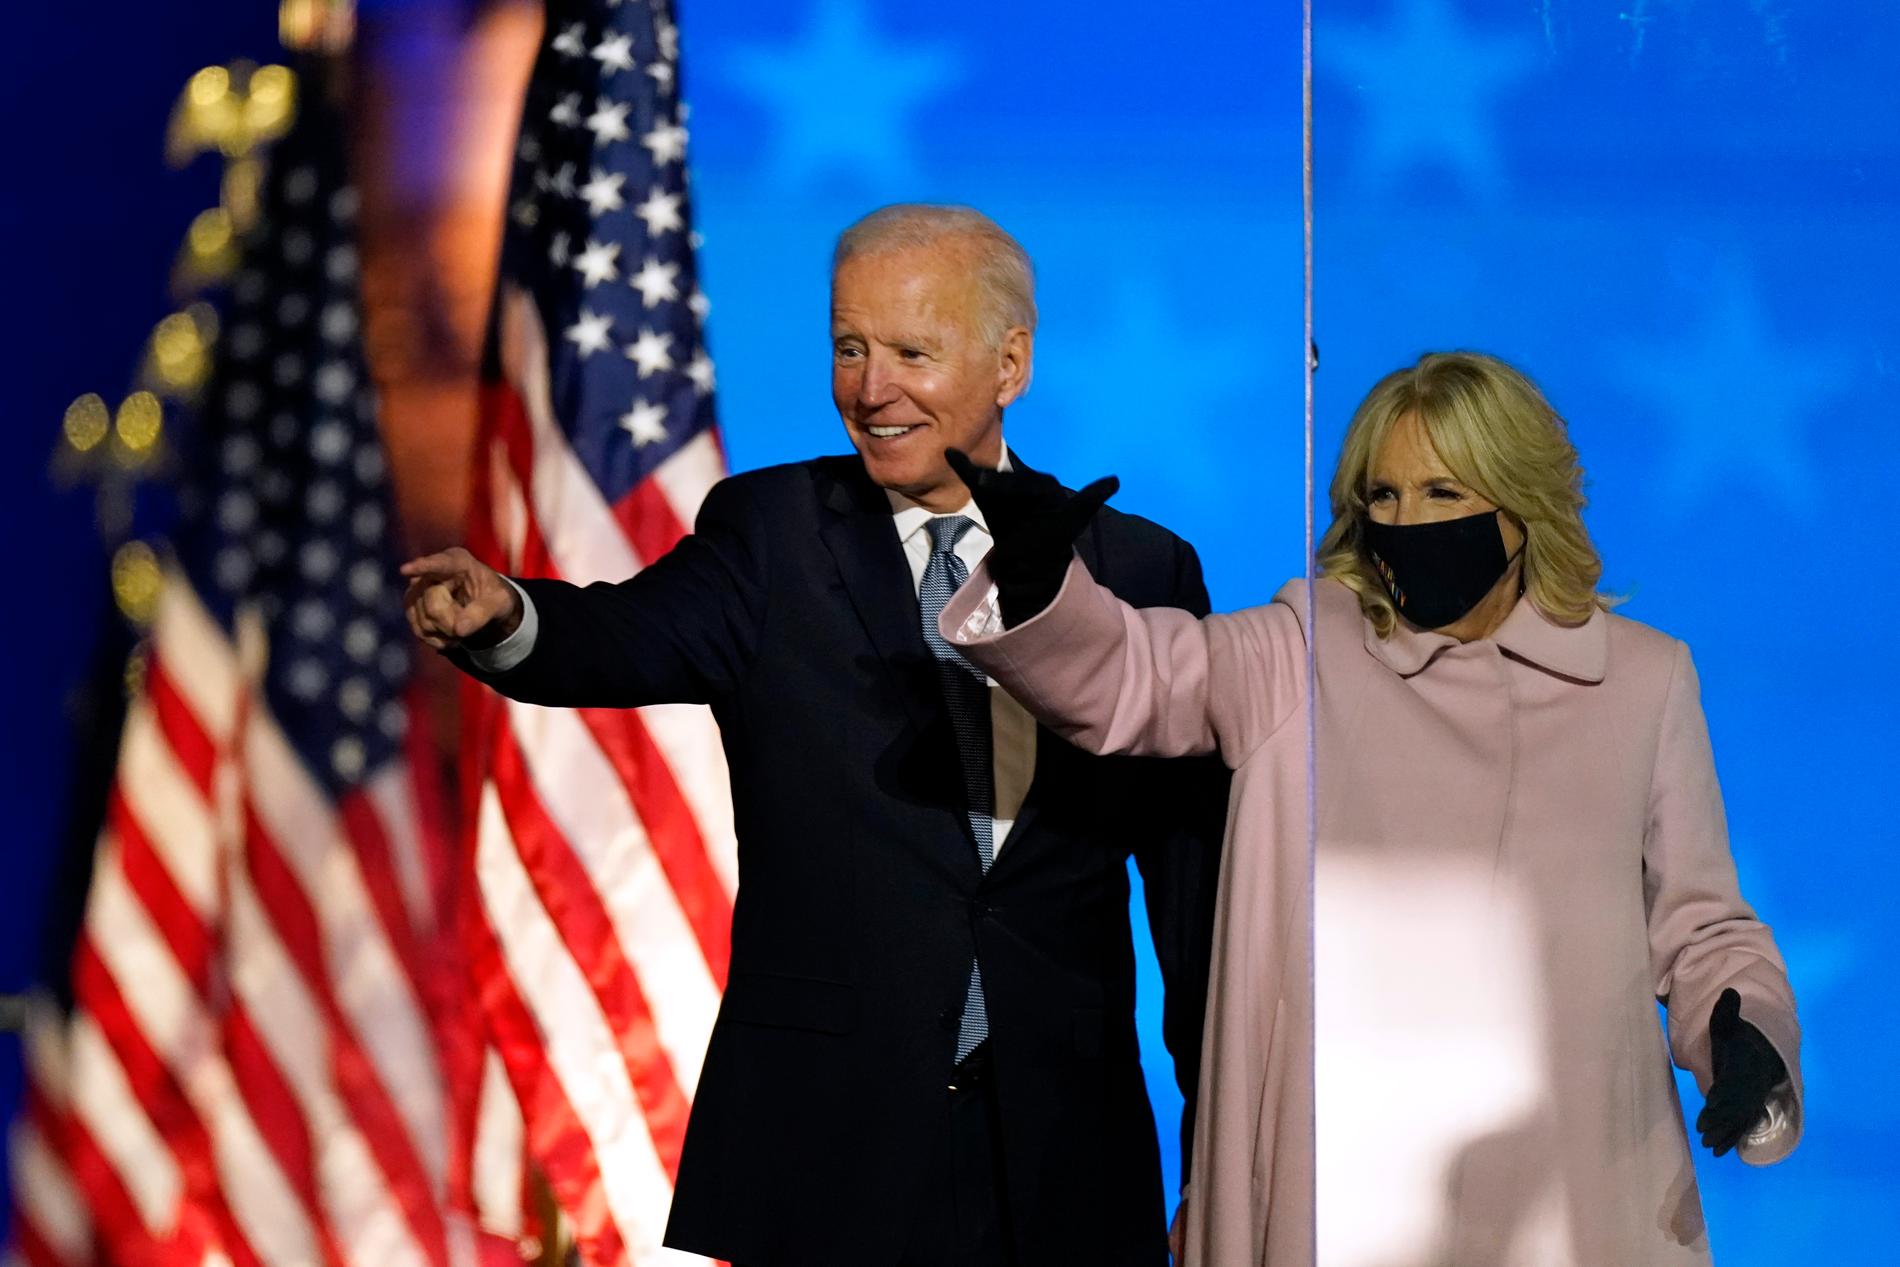 Den demokratiske valvinnaren och blivande presidenten Joe Biden och hans hustru Jill. Fotot togs på valdagen den 3 november i parets hemstat Delaware.